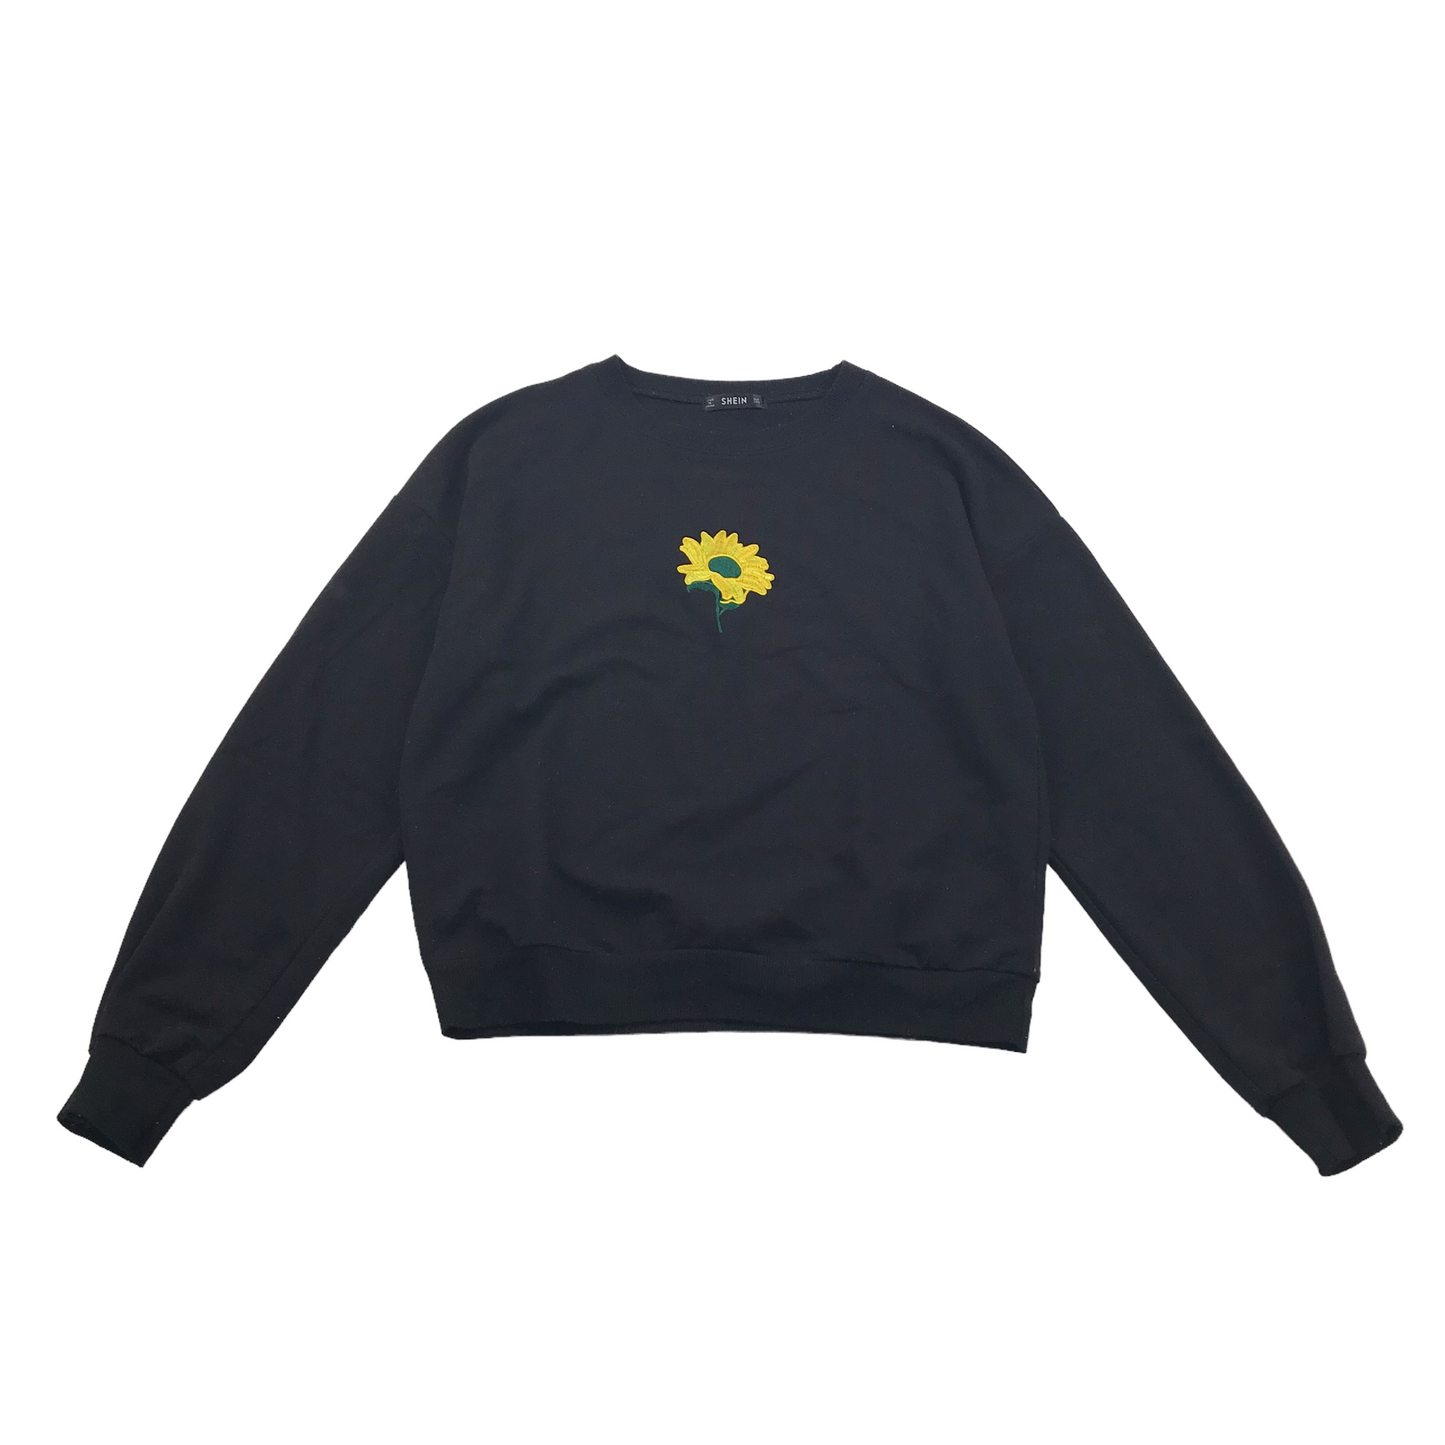 Shein Black Sun Flower Sweater Jumper Age 14